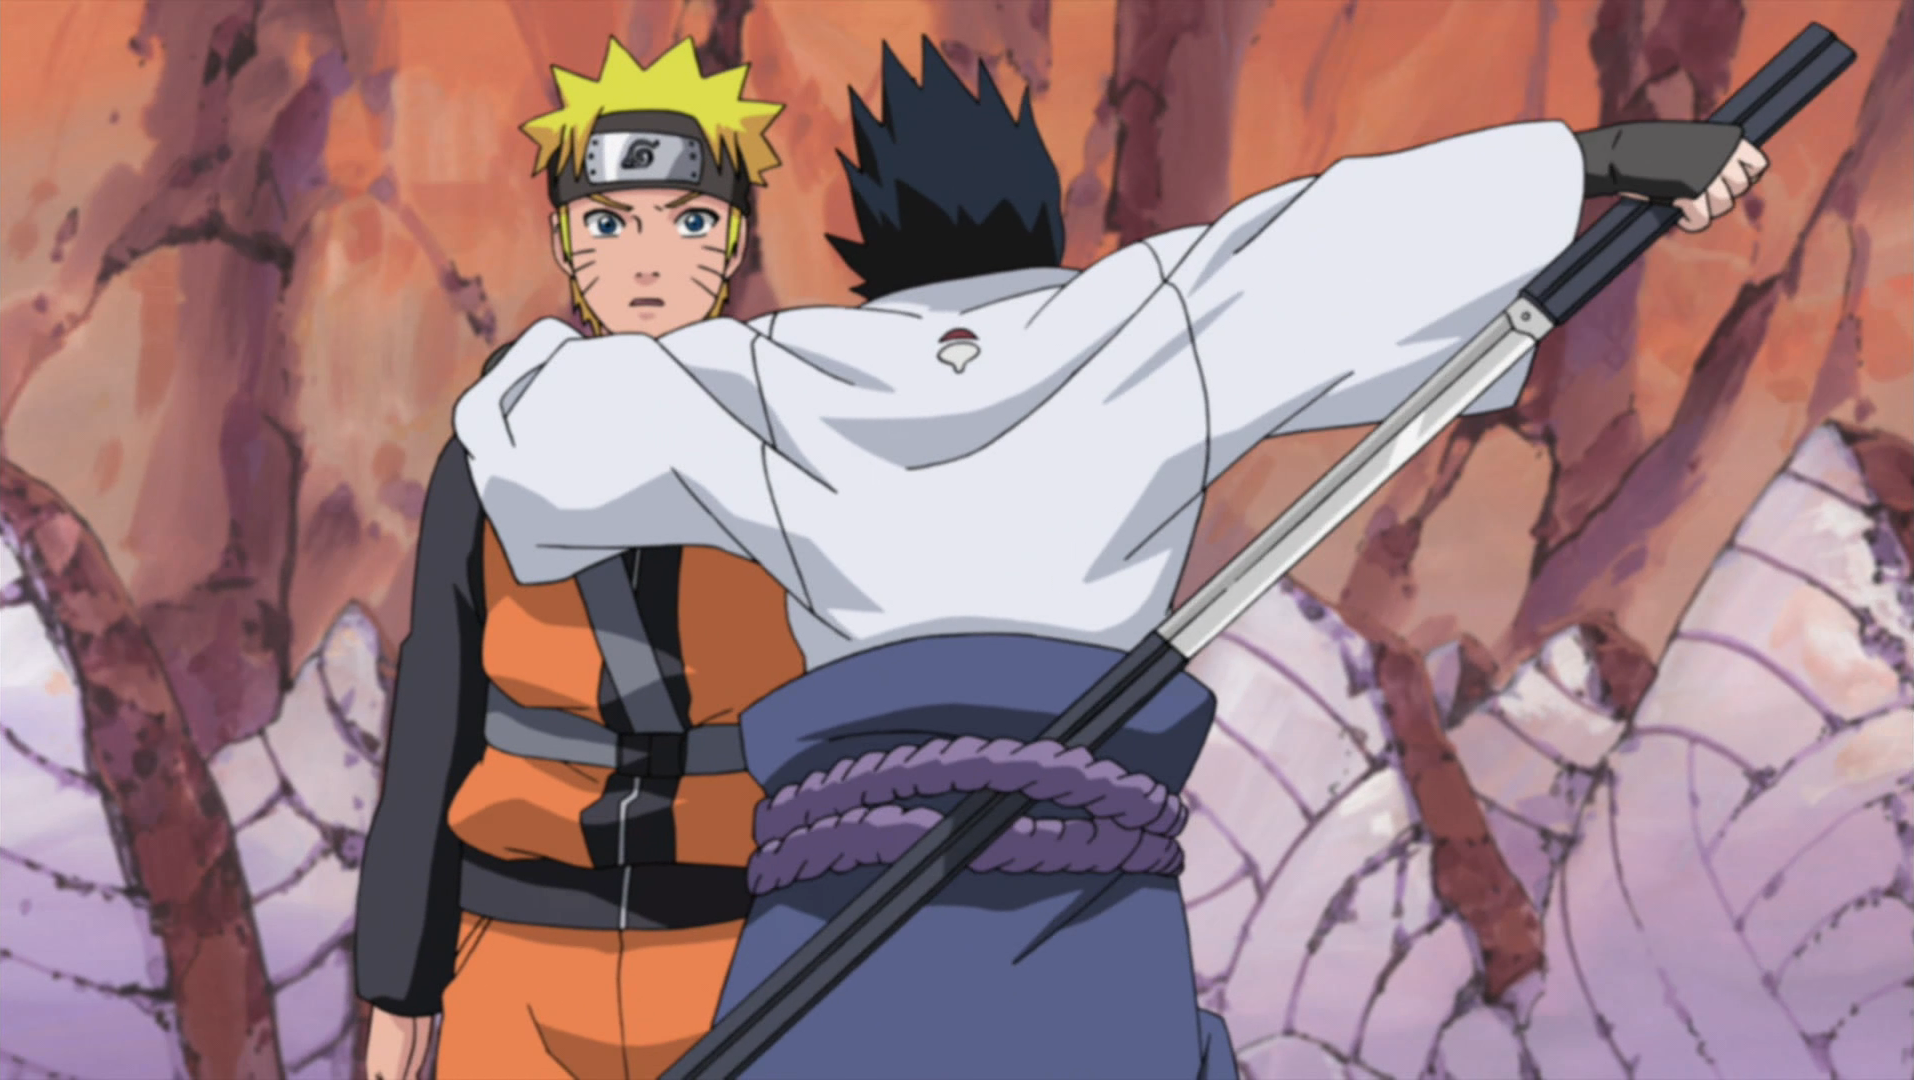 Who Is Stronger Naruto or Sasuke?